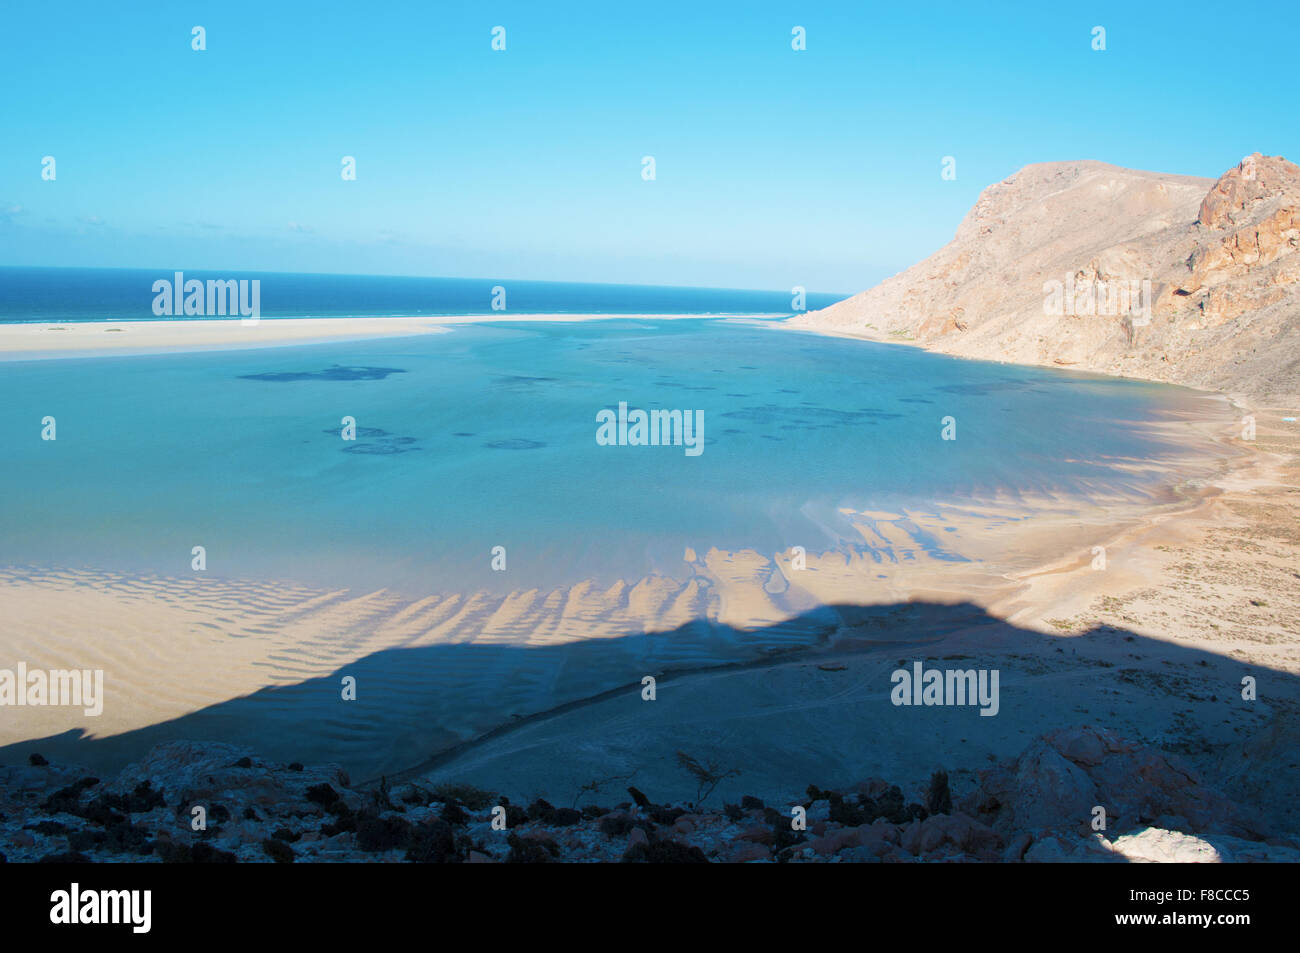 Das Naturschutzgebiet von Qalansia Strand, Golf von Aden, Arabisches Meer, Insel Sokotra, Jemen, Nahost, einzigartige Artenvielfalt Stockfoto